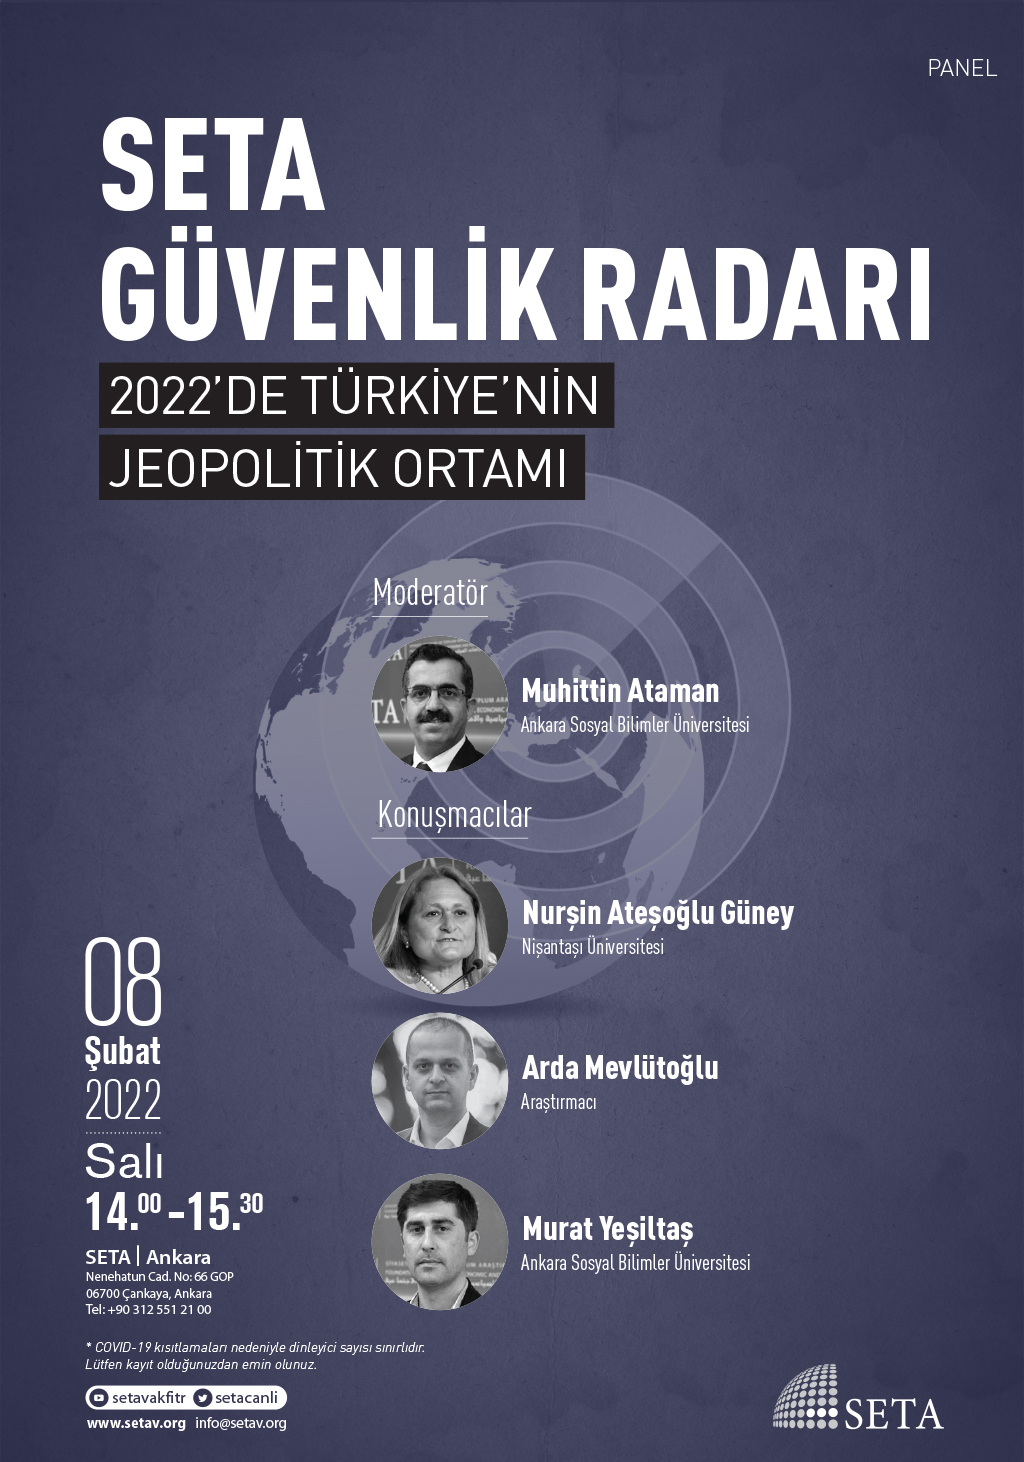 Panel SETA Güvenlik Radarı 2022 de Türkiye nin Jeopolitik Ortamı